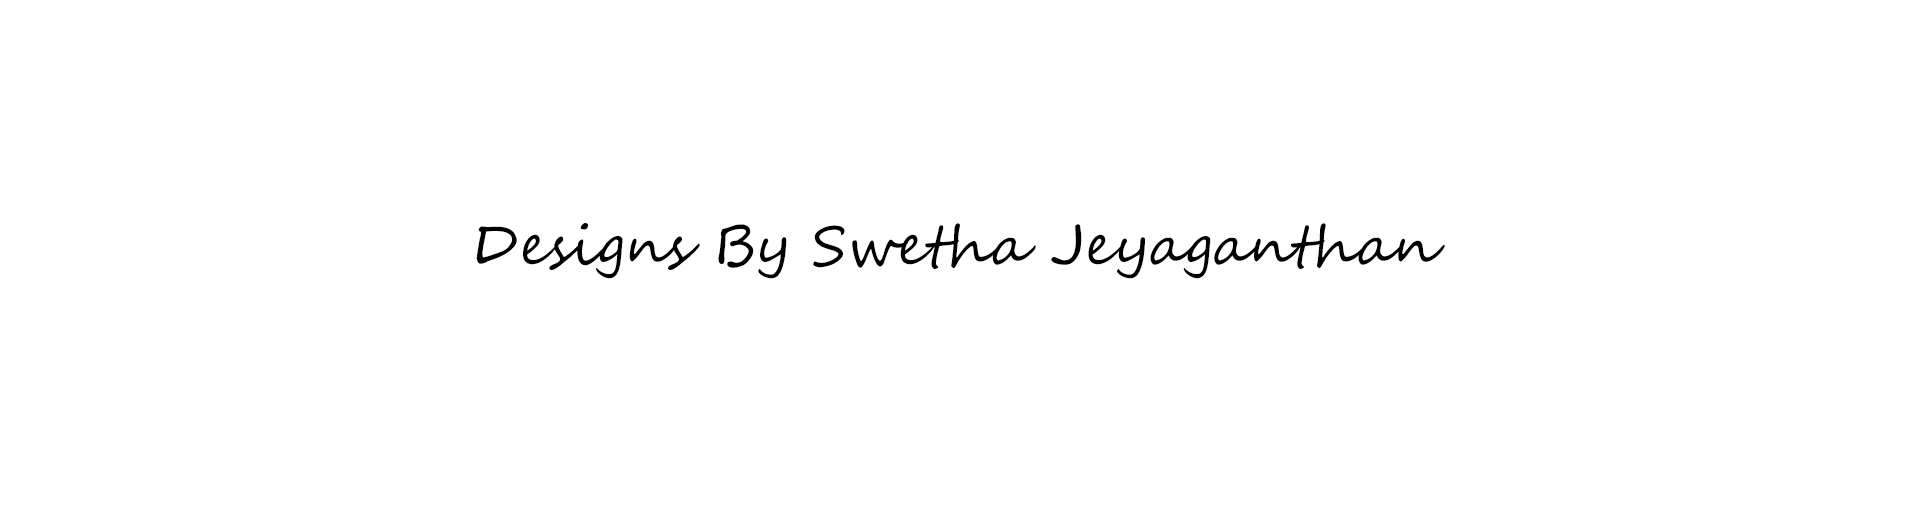 Swetha Jeyaganthan